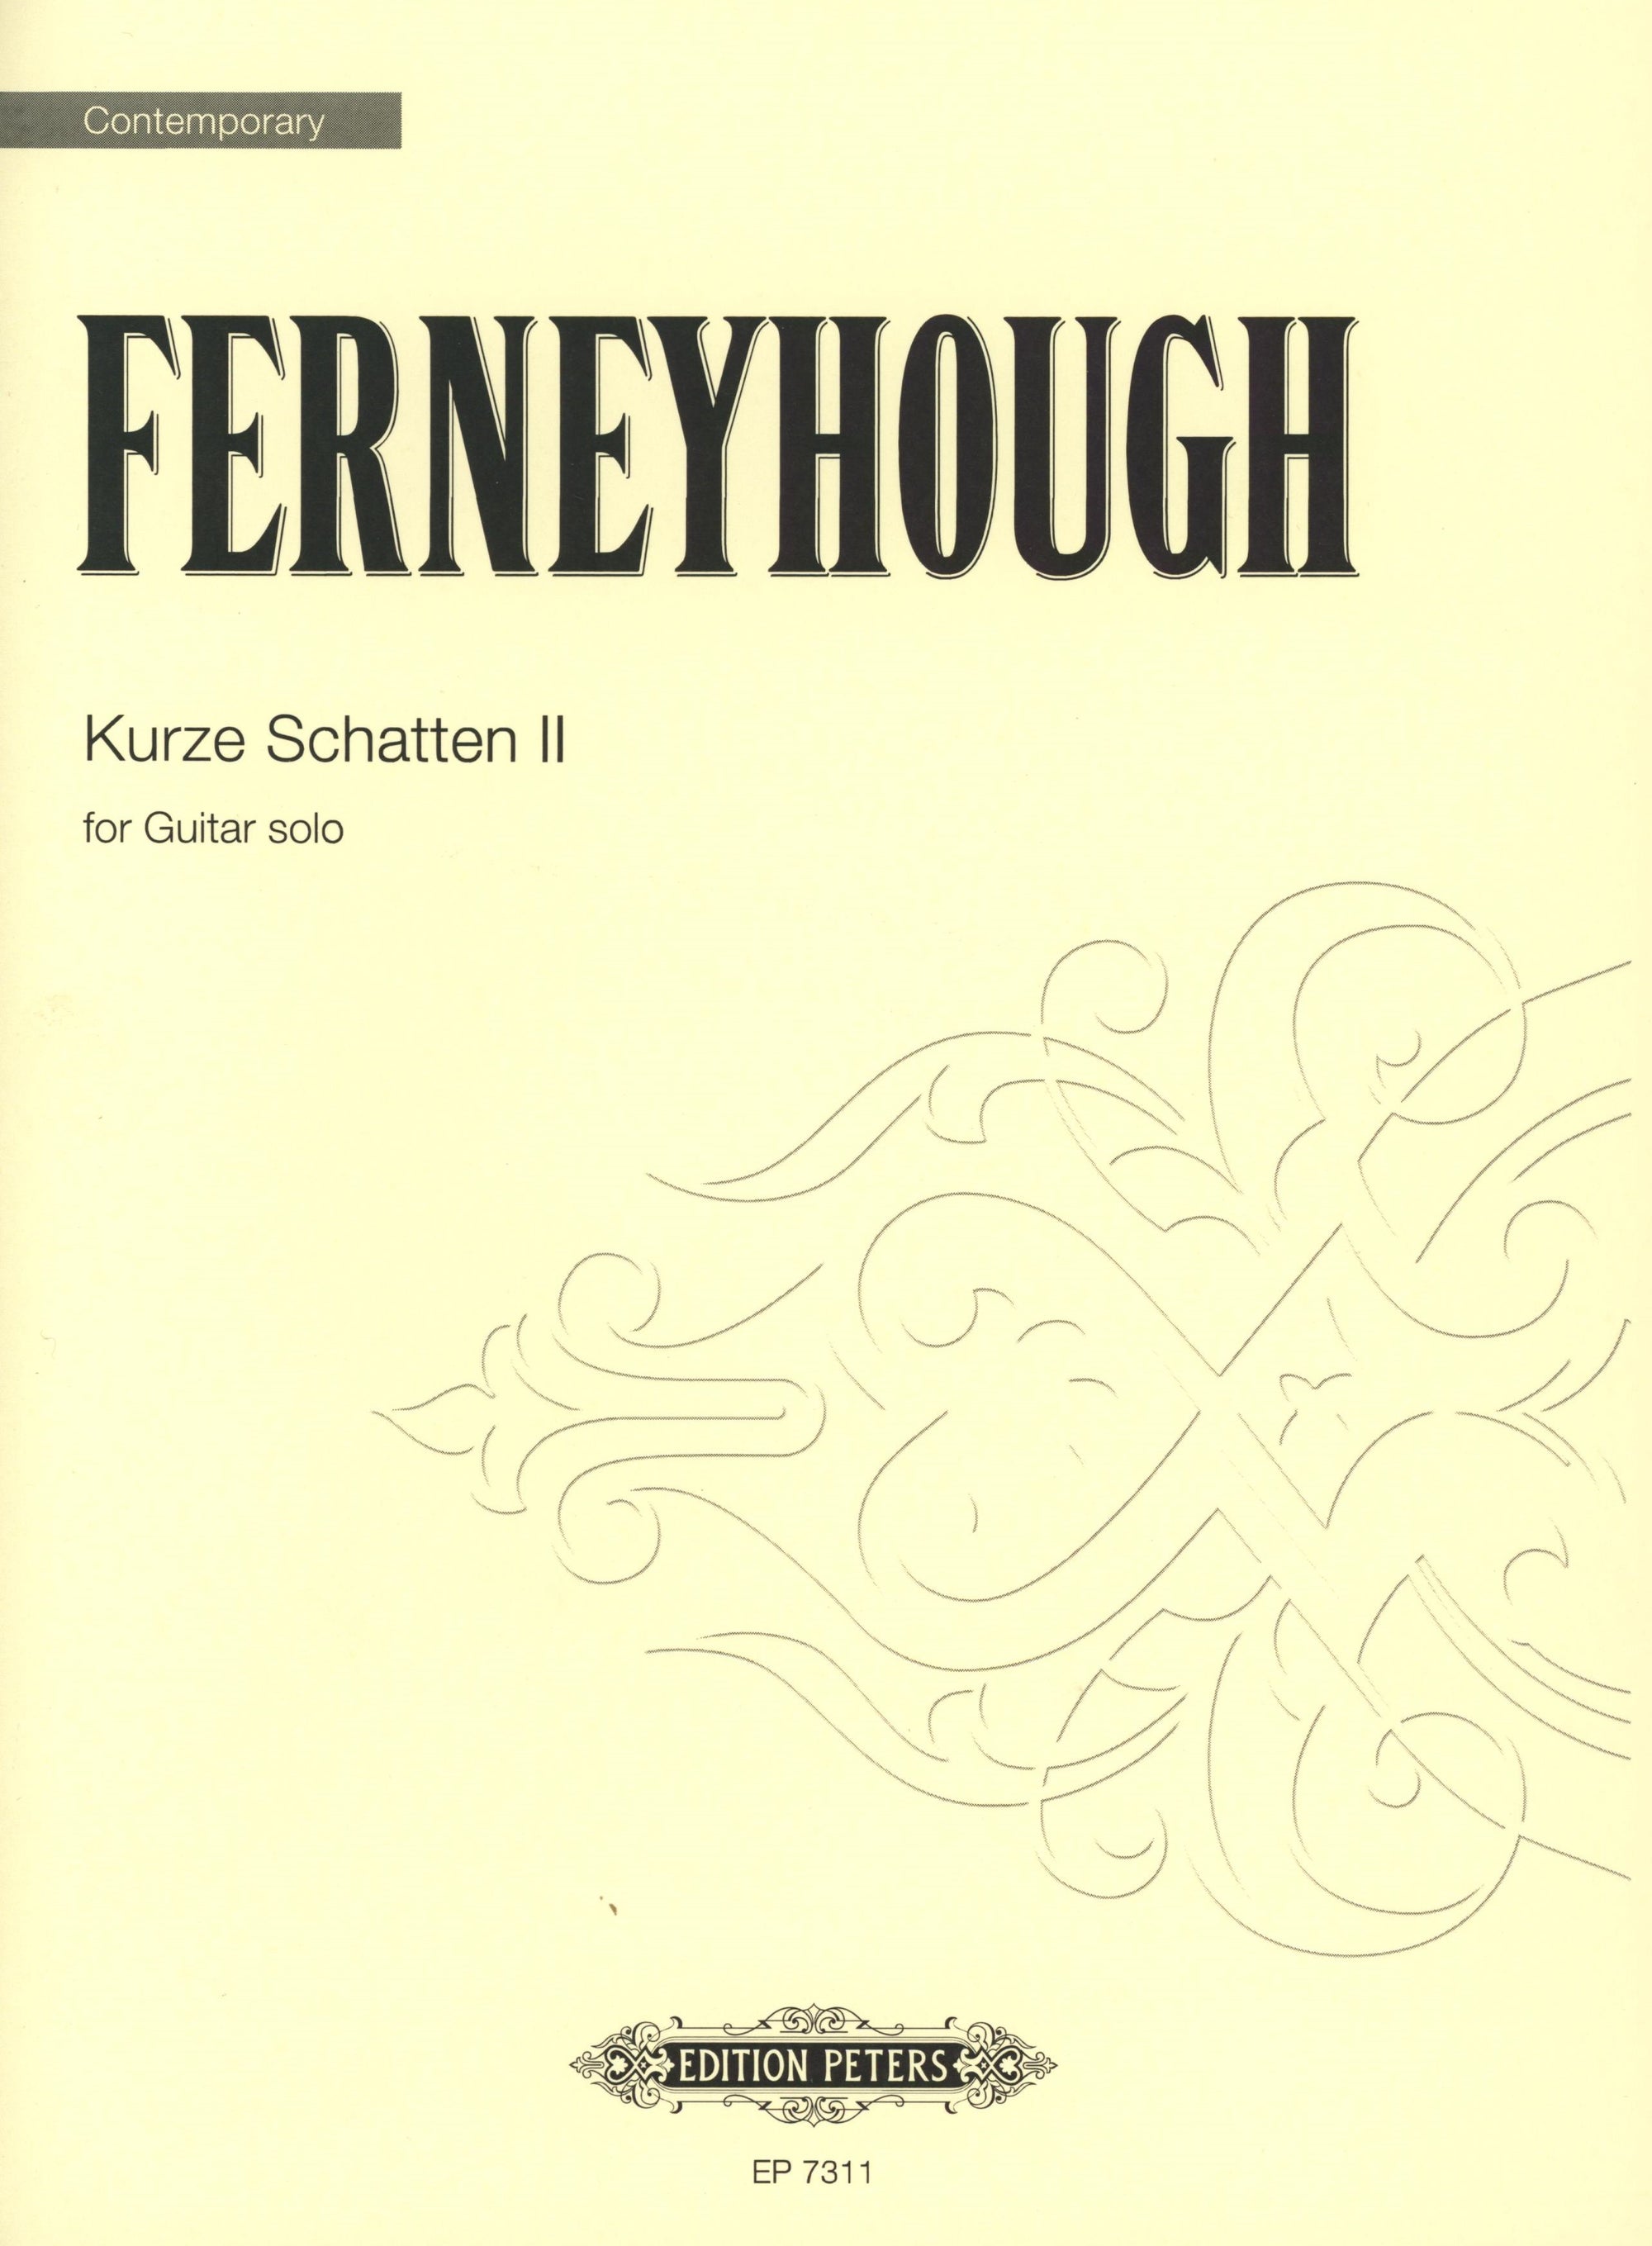 Ferneyhough: Kurze Schatten II